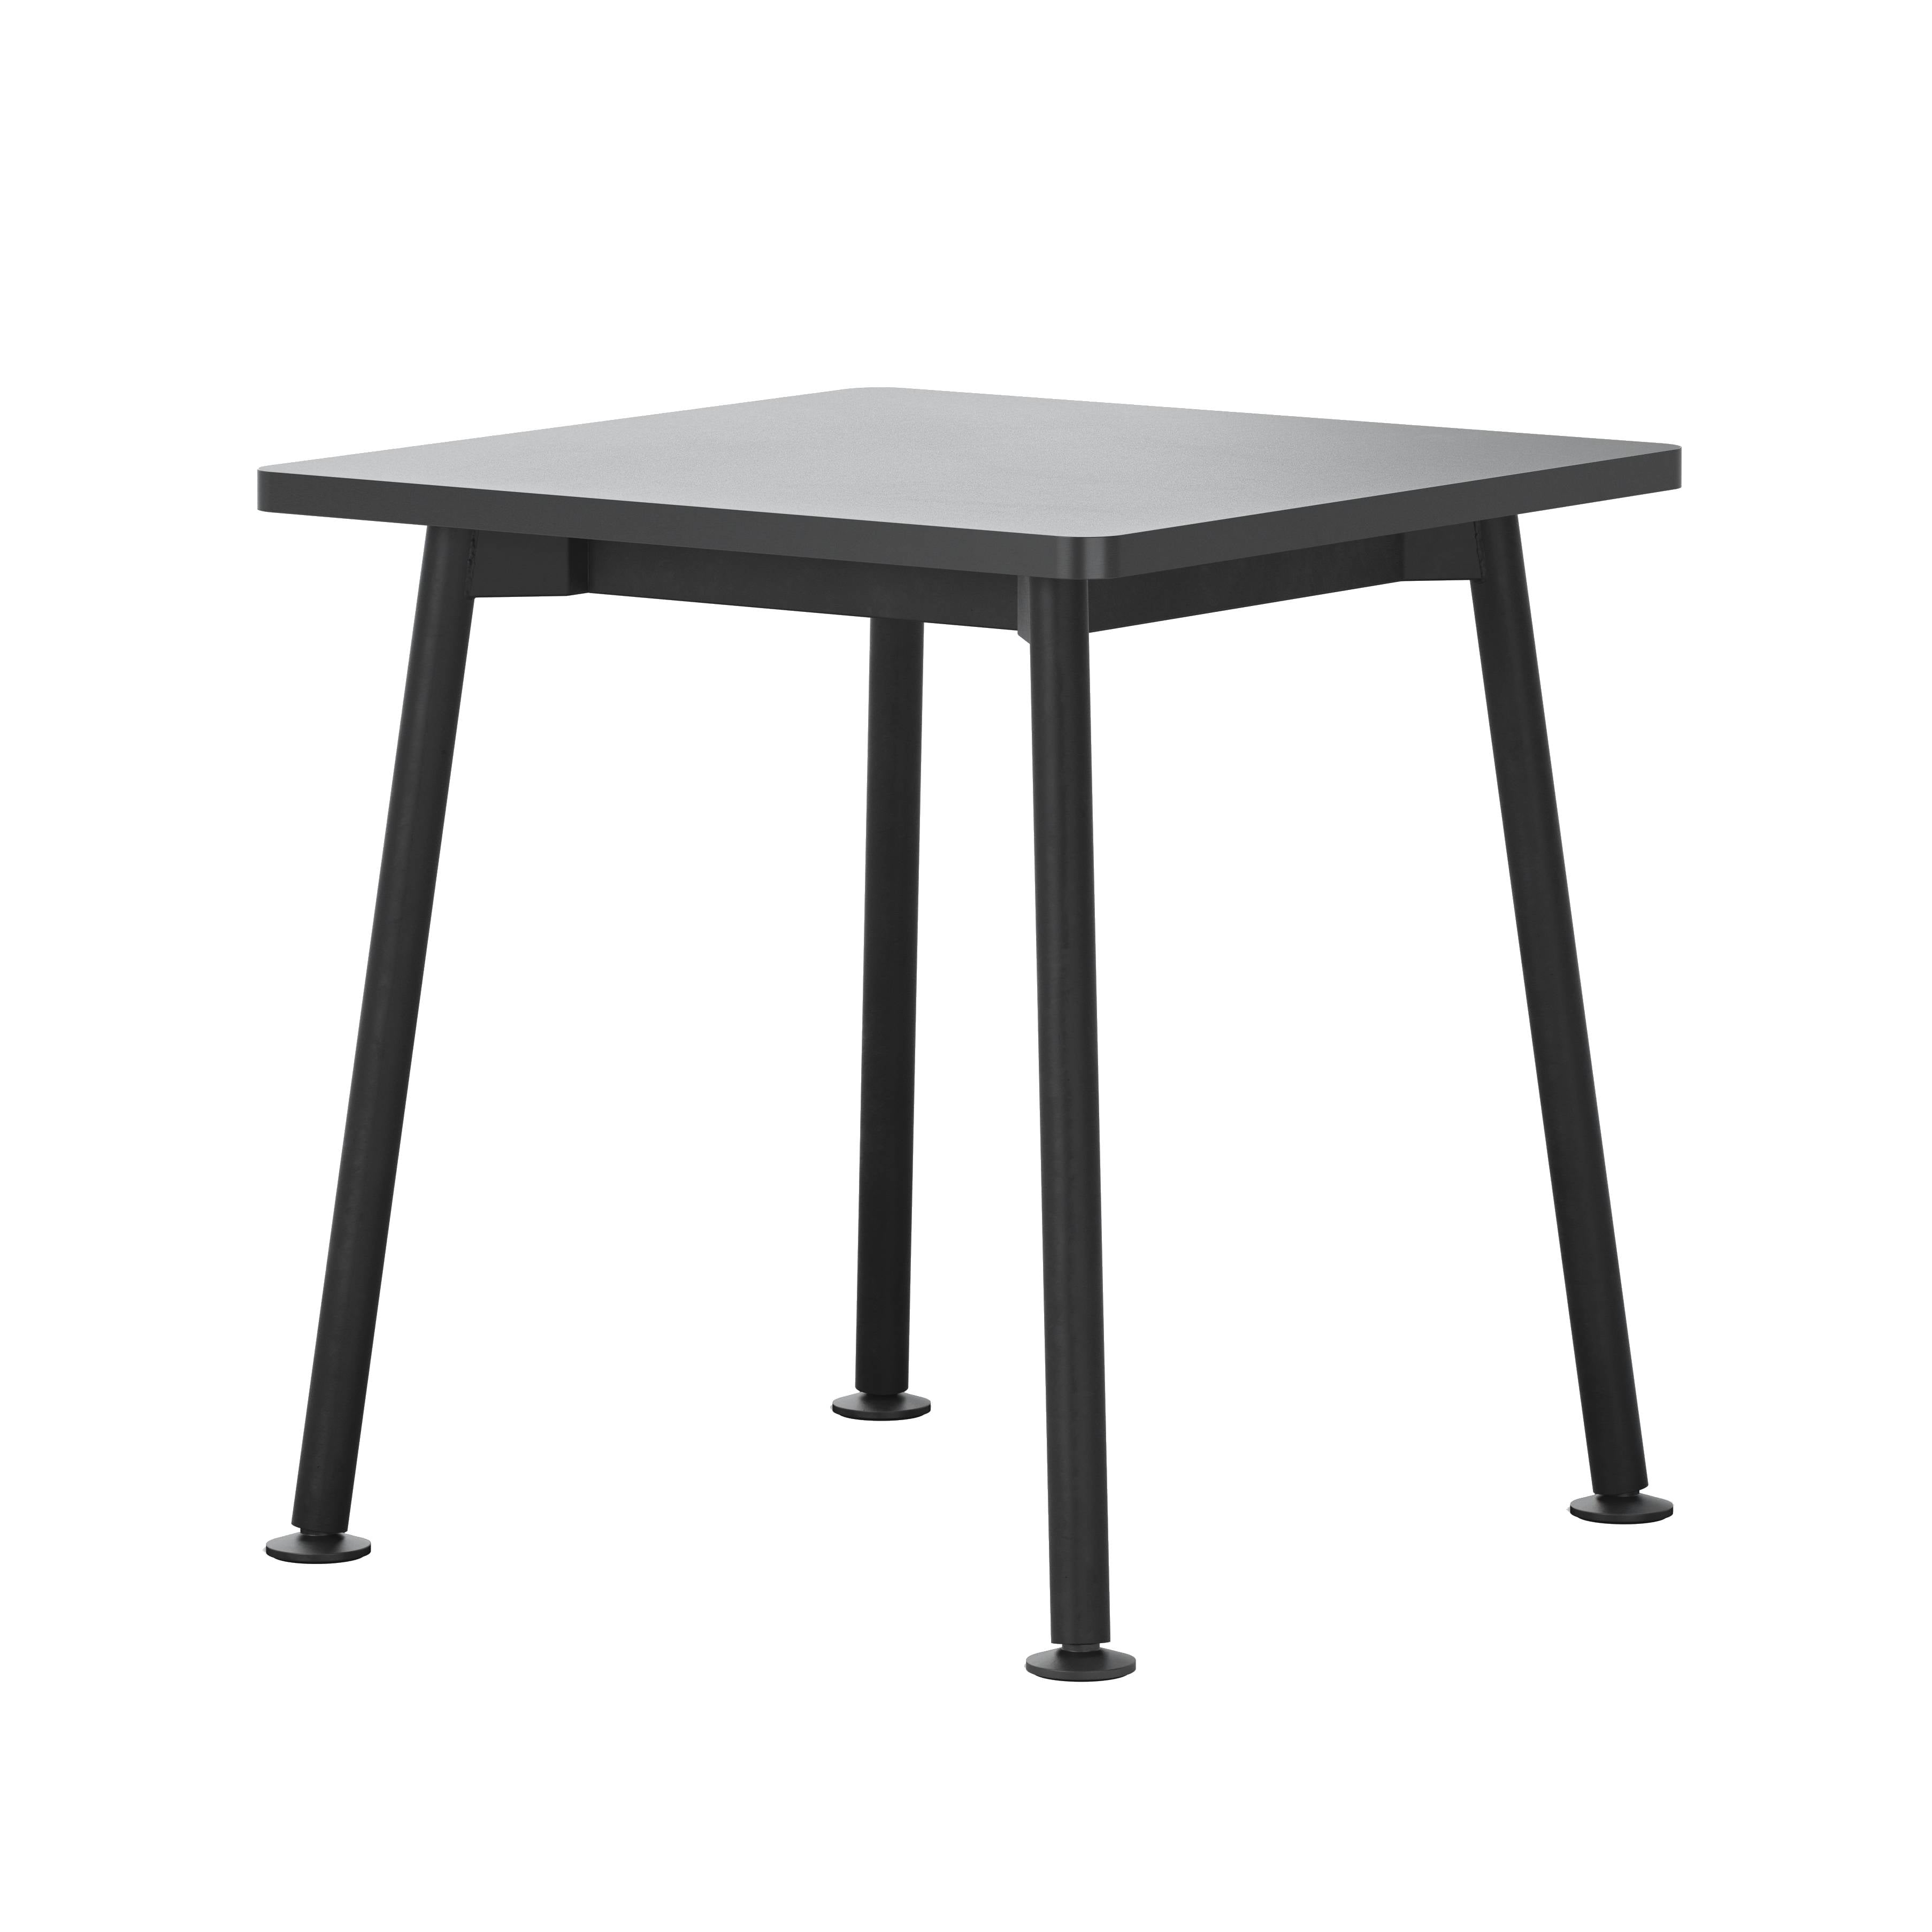 Landa Table: Square + Black Laminate + Black